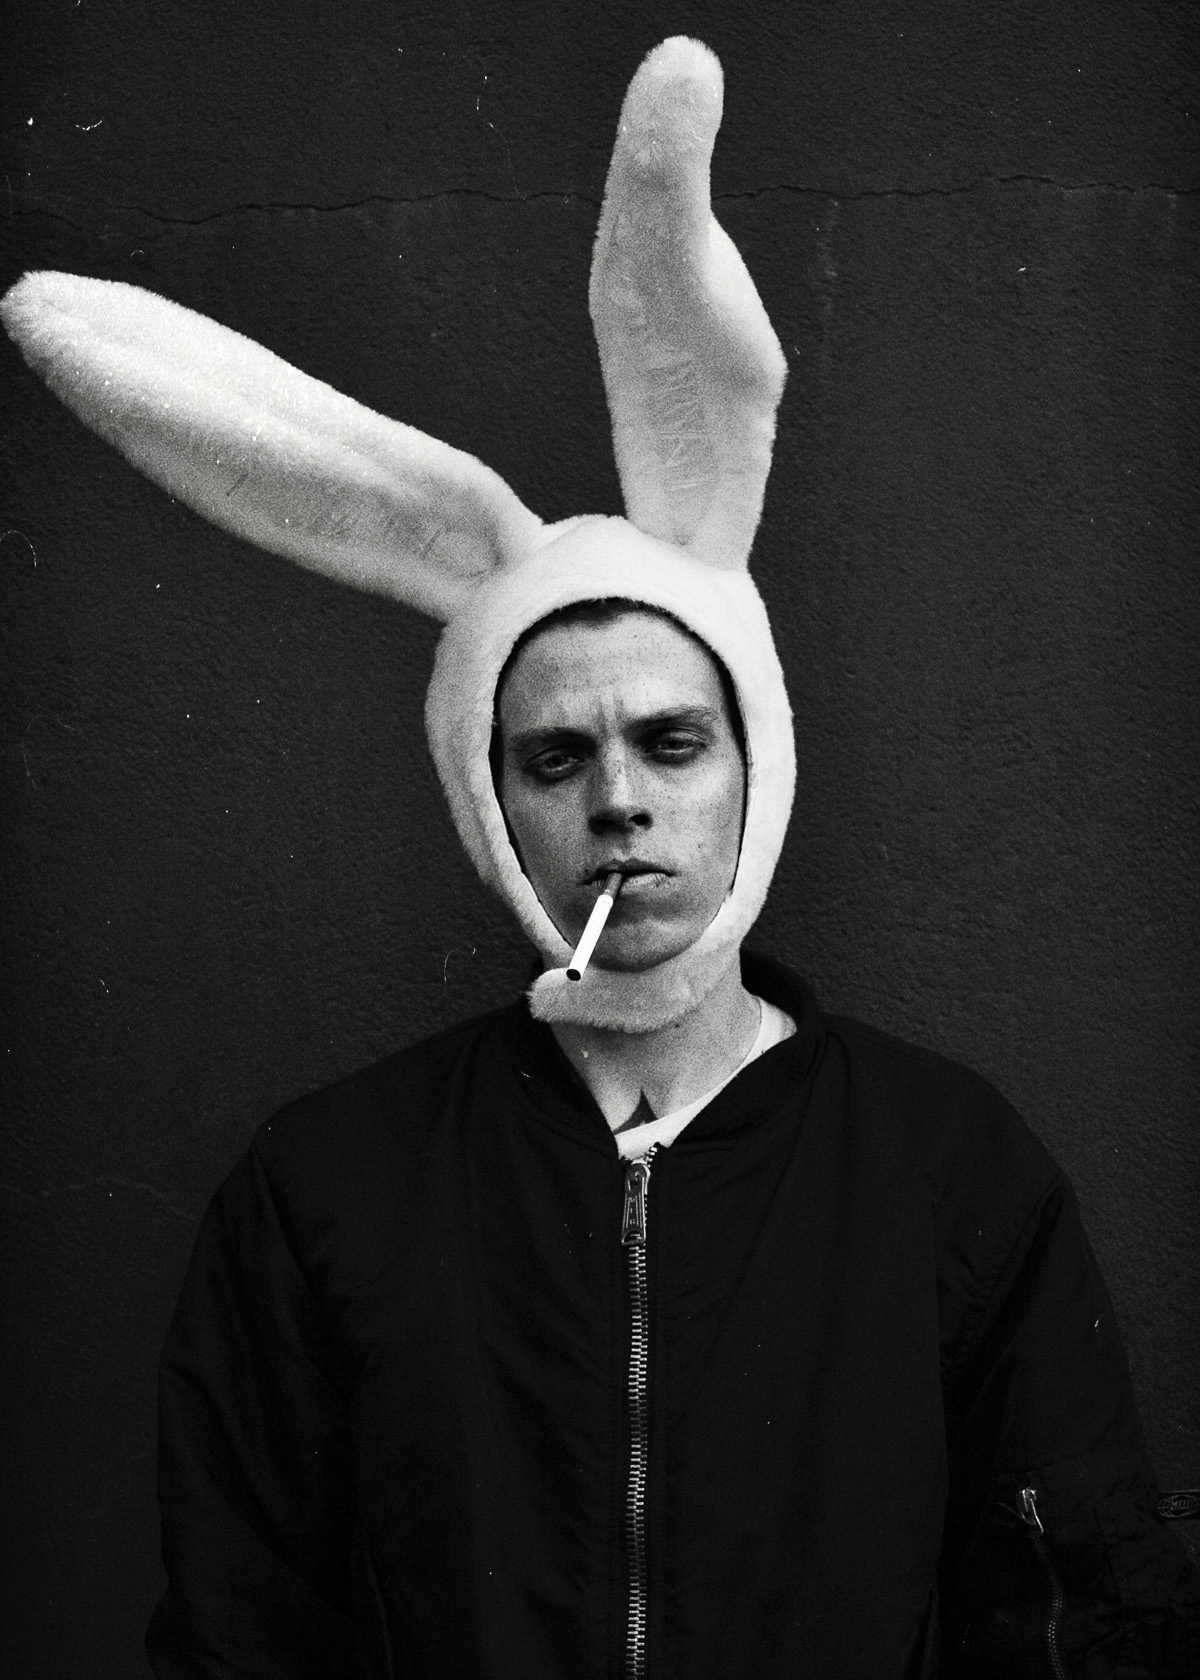 Una foto en blanco y negro de una persona con un sombrero de orejas de conejo, mostrando una expresión seria y sosteniendo un cigarrillo en la boca.